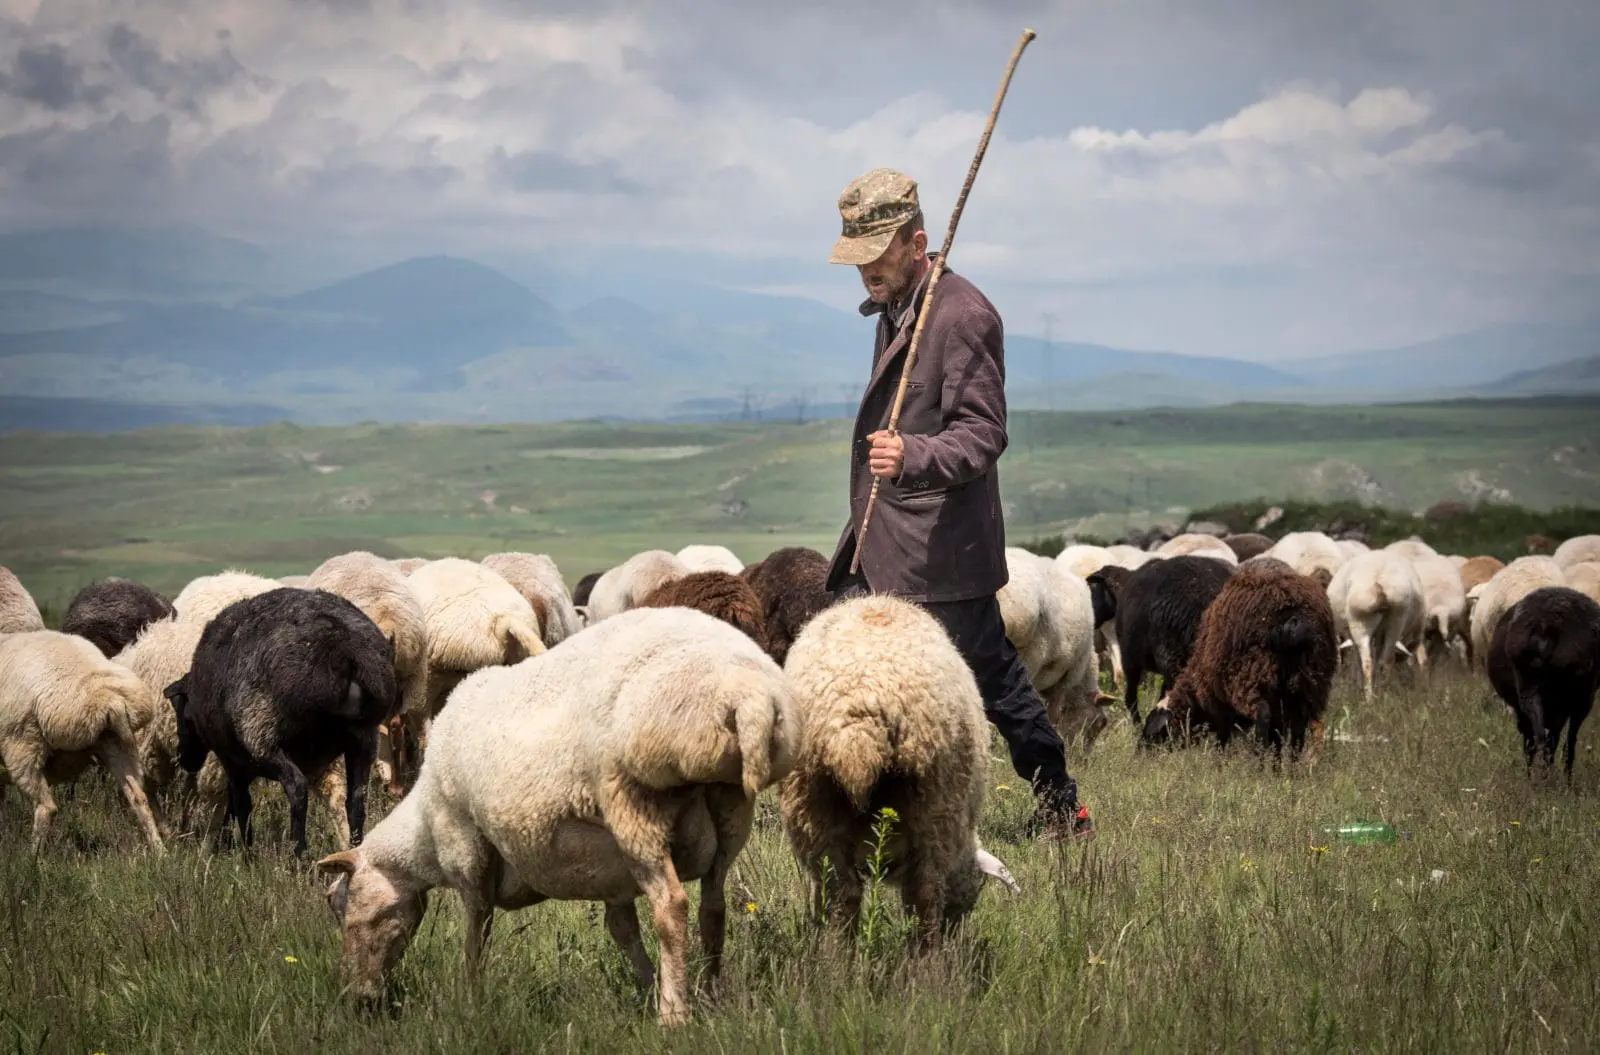 Арені, Вірменія: Вірменин пасе овець у сільській місцевості